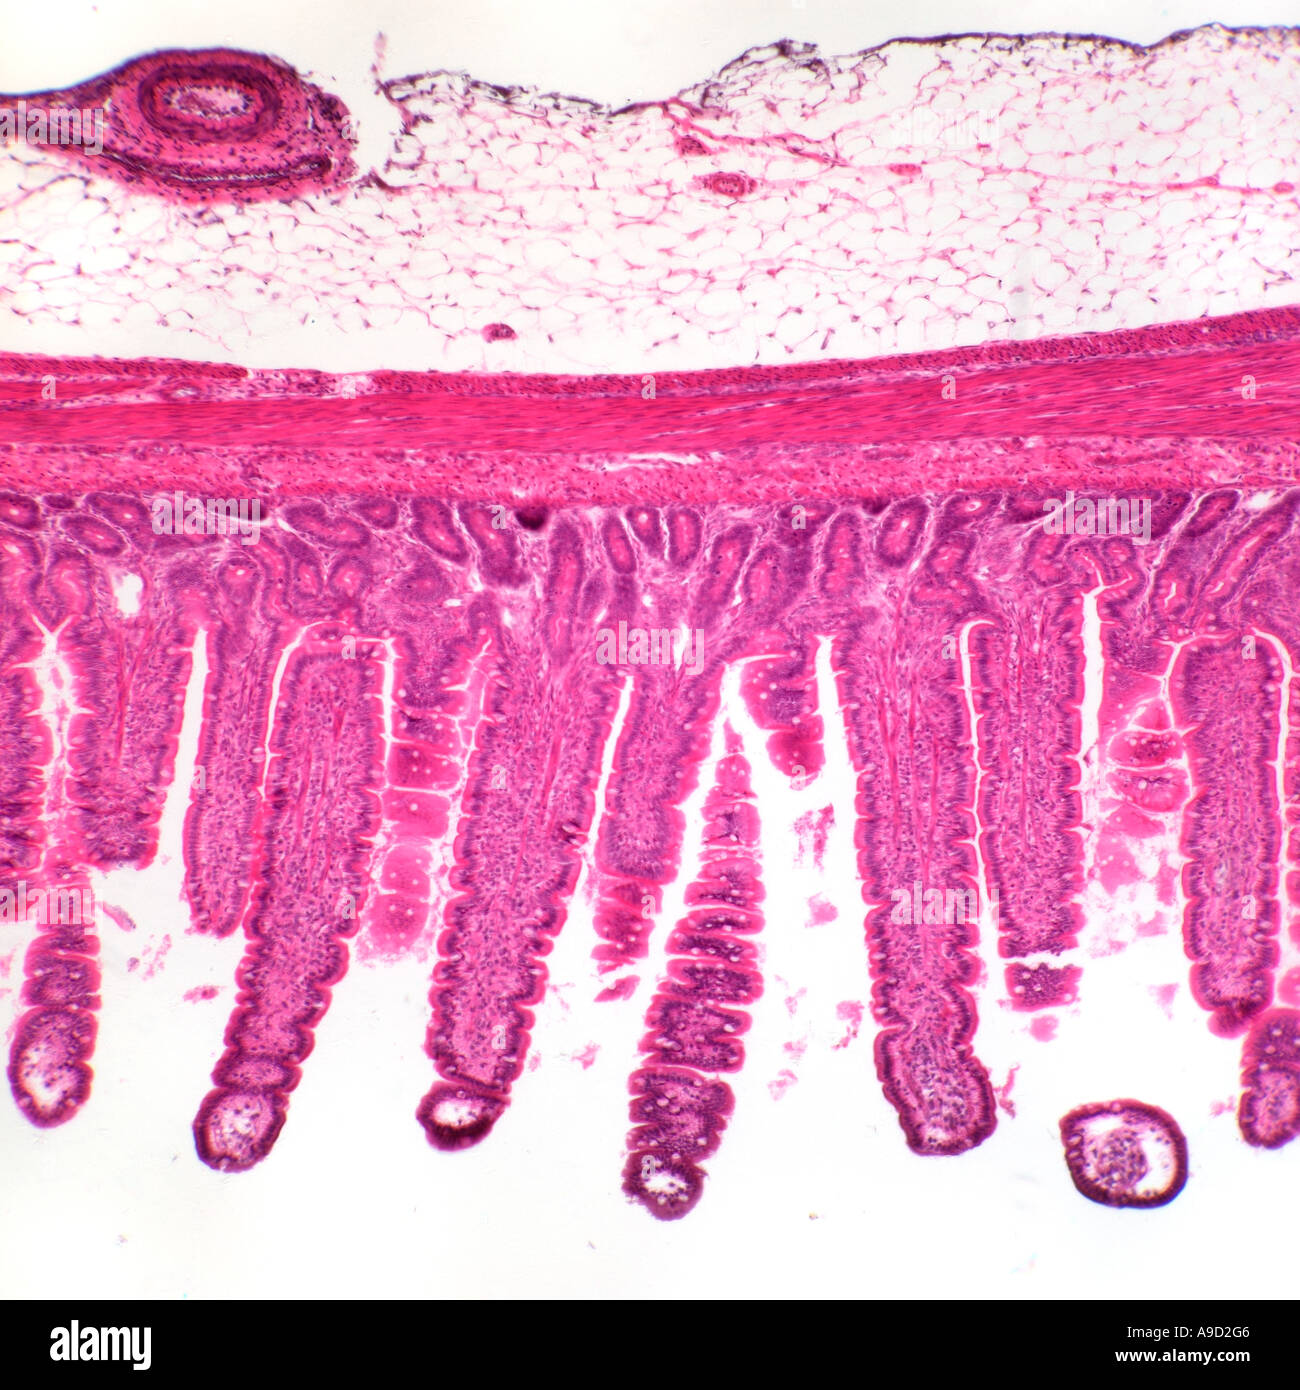 Menschlichen Dünndarm Abschnitt zeigt Villi, Hellfeld Mikrophotographie Stockfoto